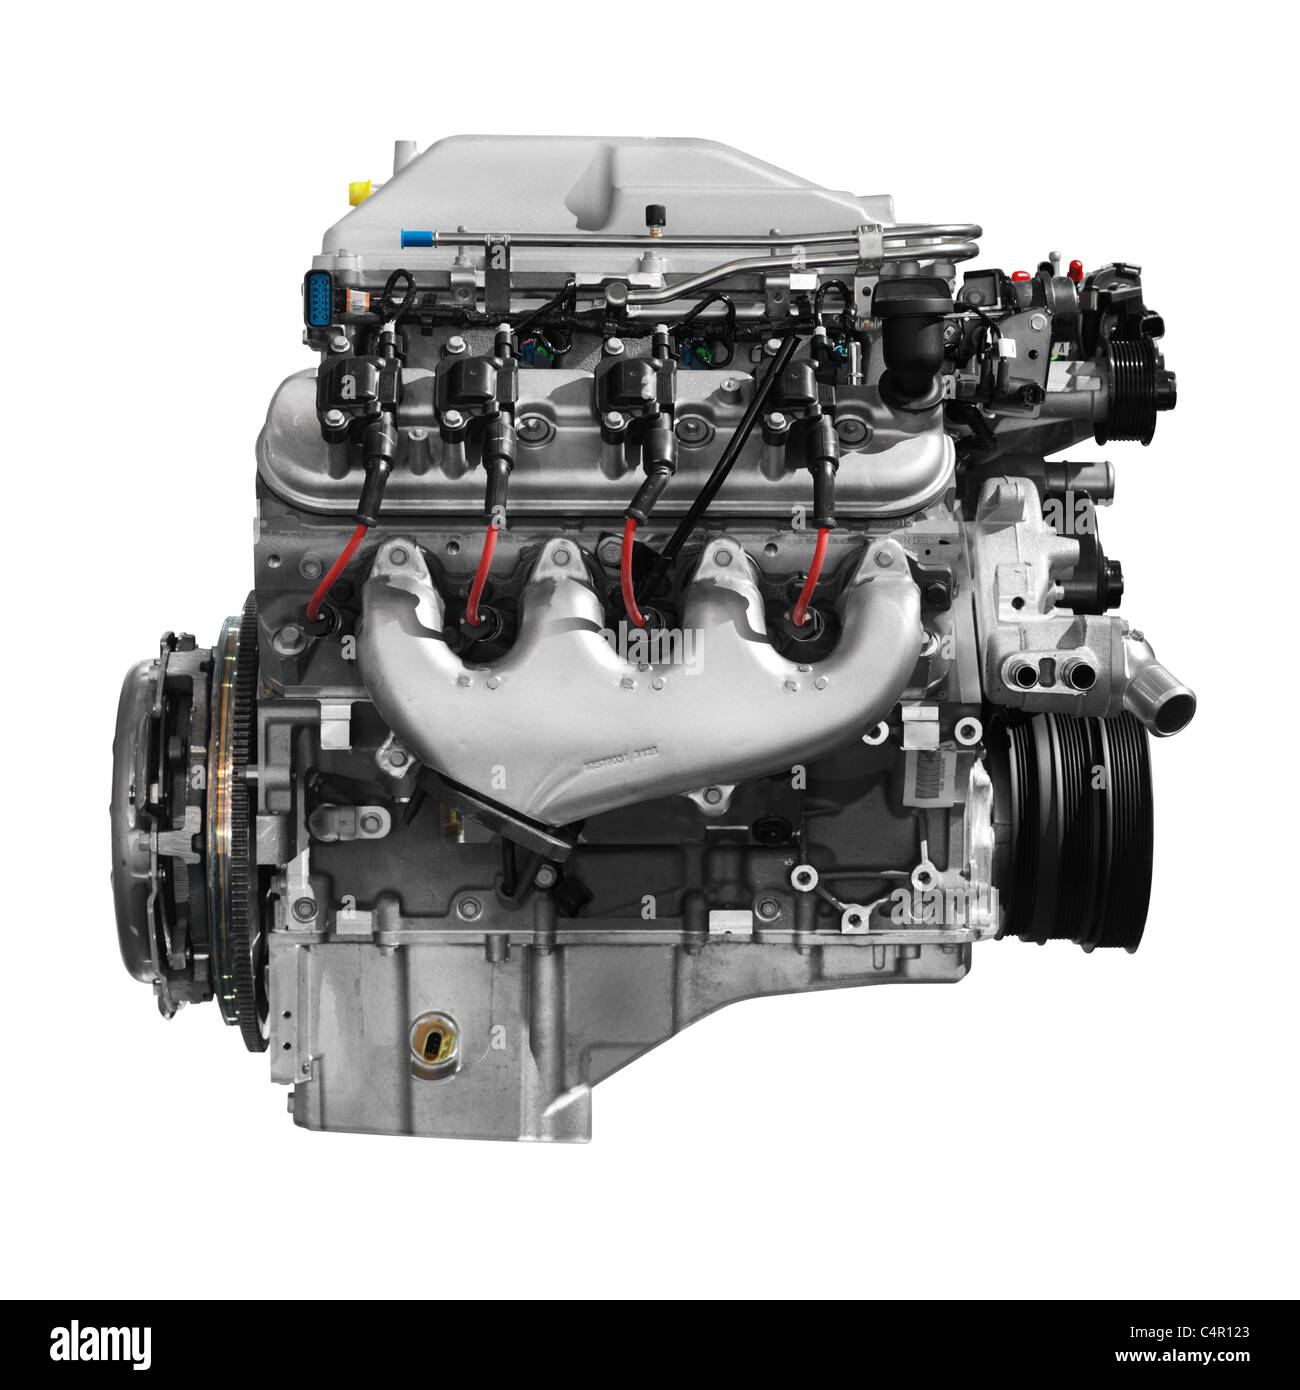 Lizenz verfügbar unter MaximImages.com - Supercharged V8 Cadillac 556HP 6,2L LSA Motor isoliert auf weißem Hintergrund mit Beschneidungspfad Stockfoto